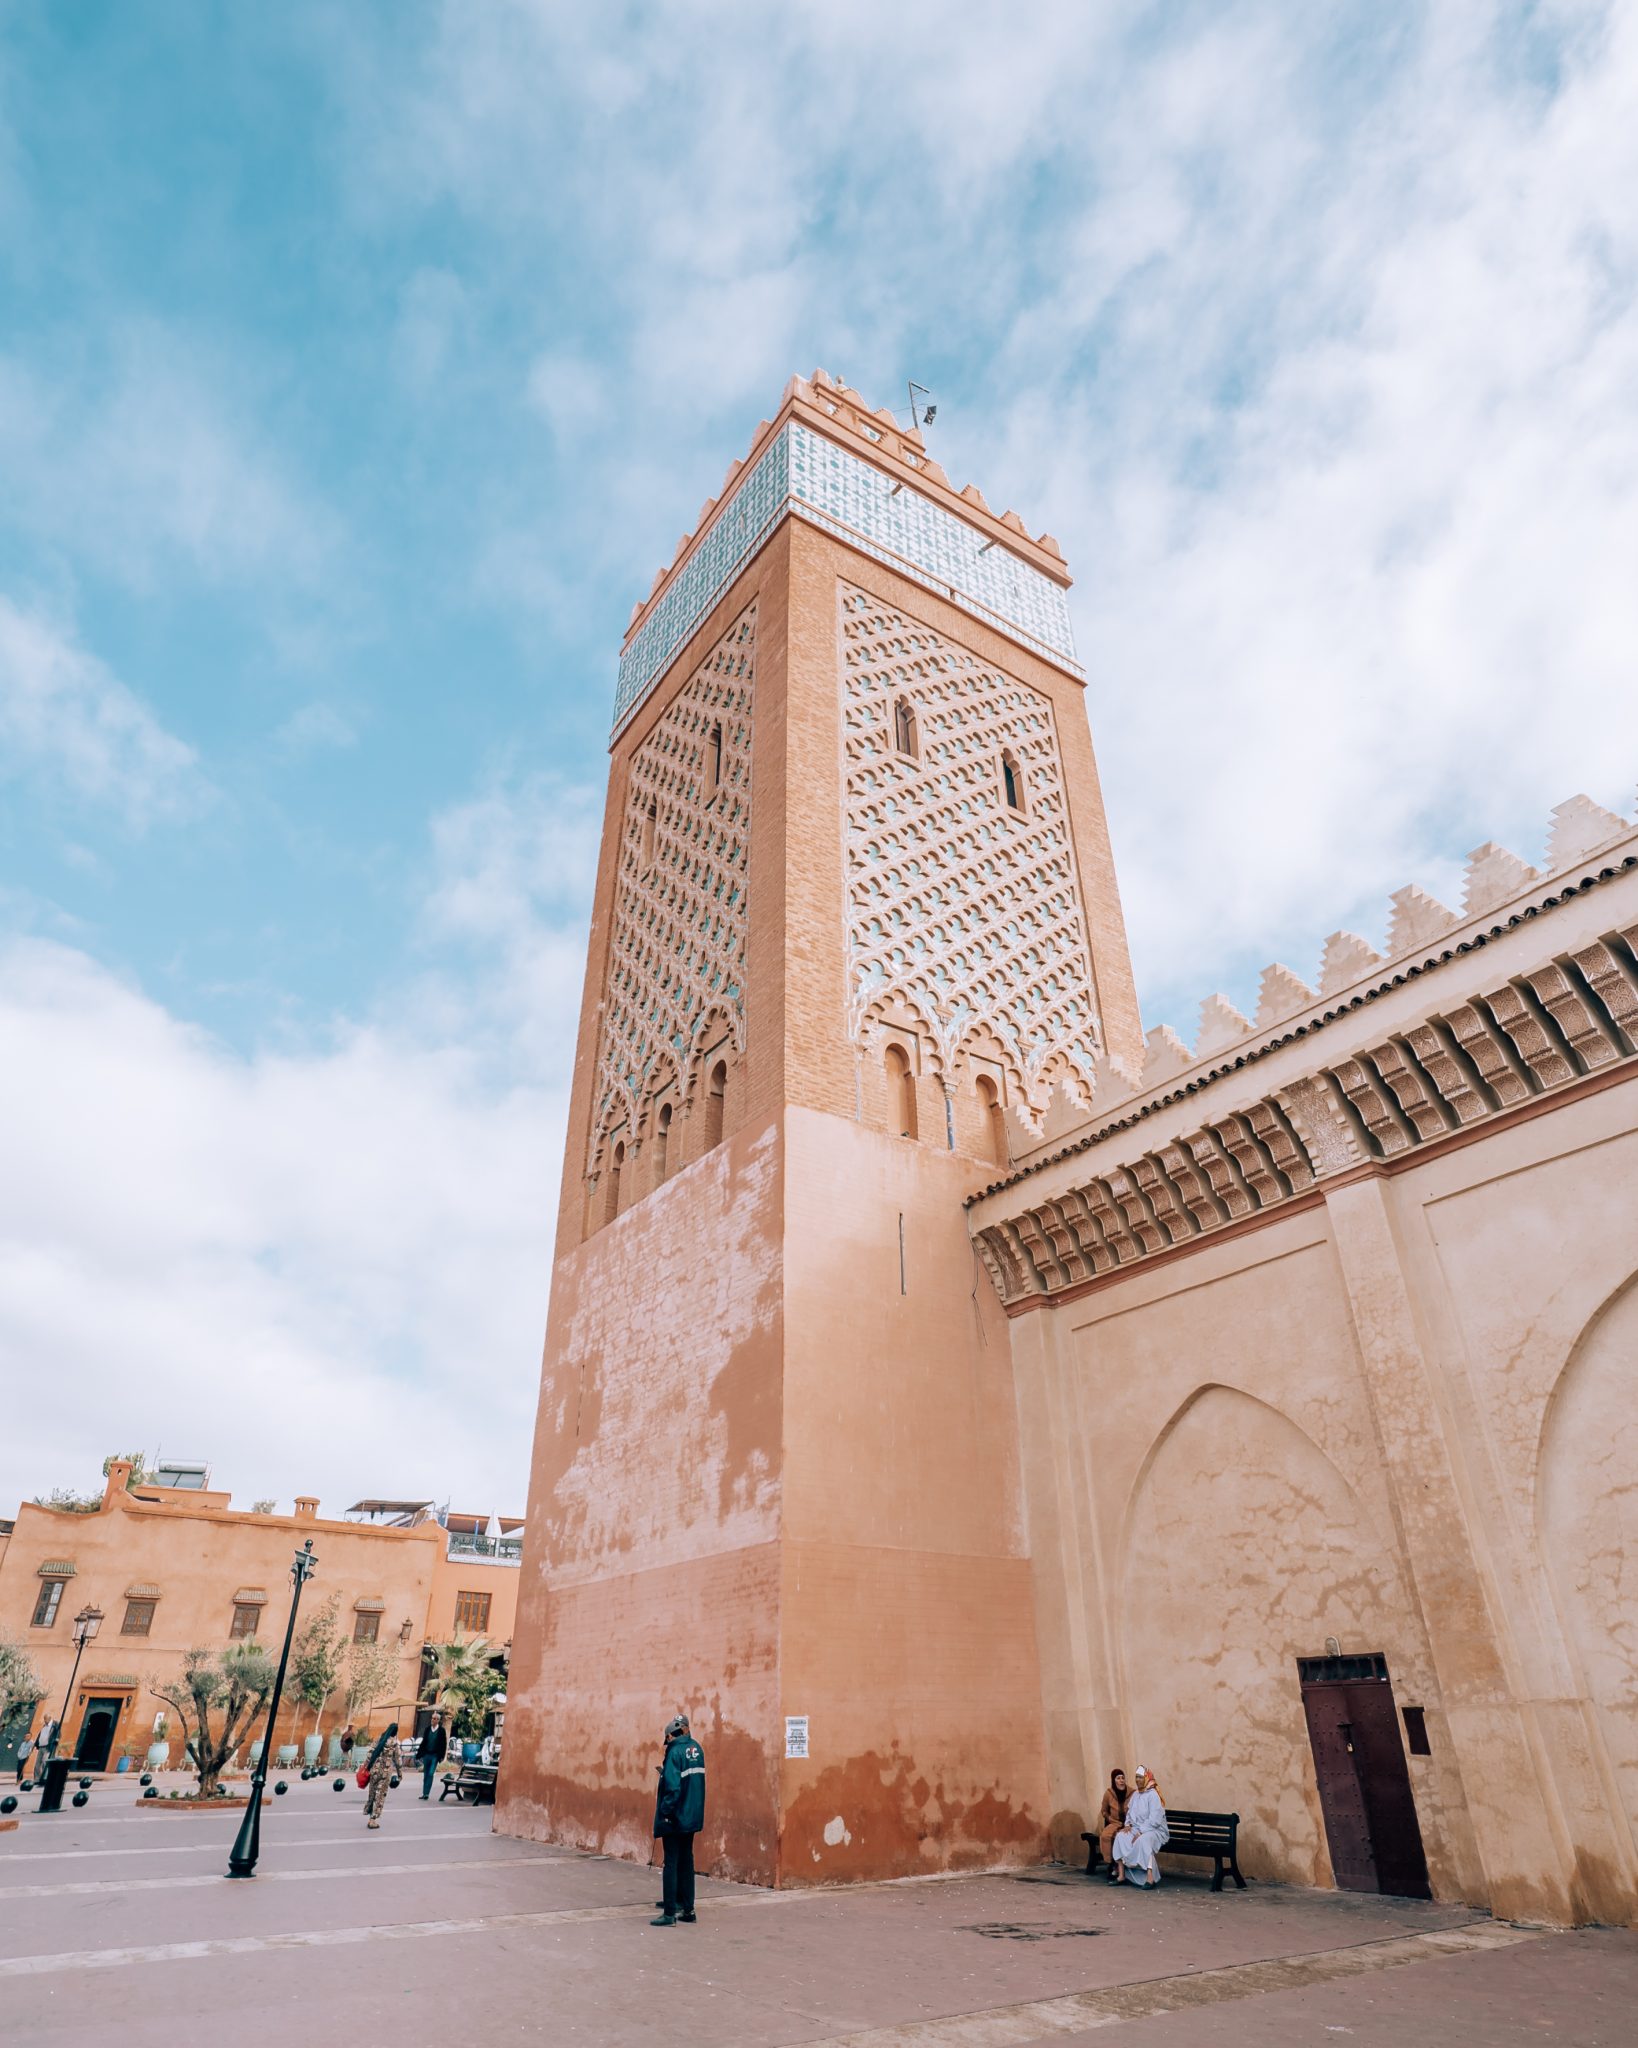 morocco tour travel talk